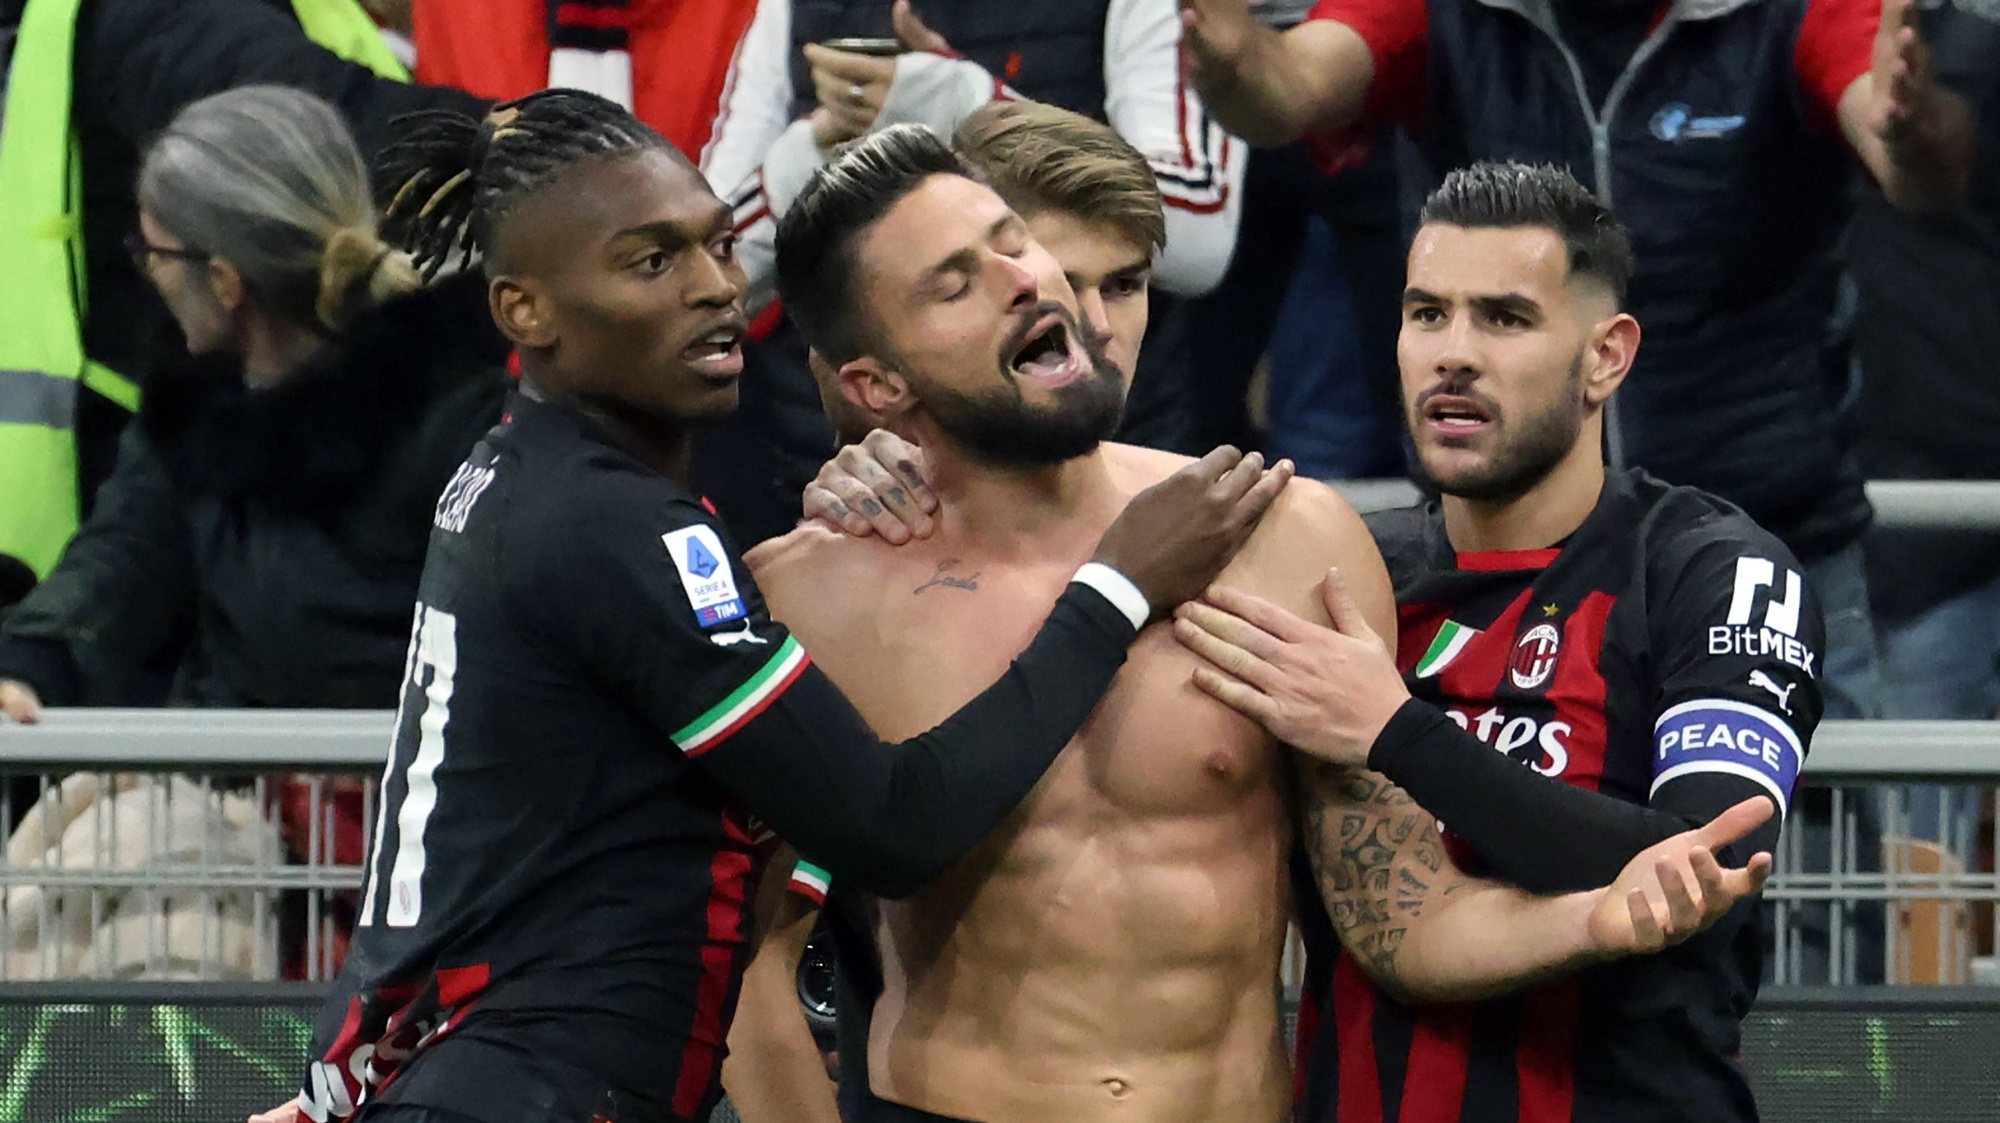 Milan vence Torino com gol de Giroud e respira após série negativa